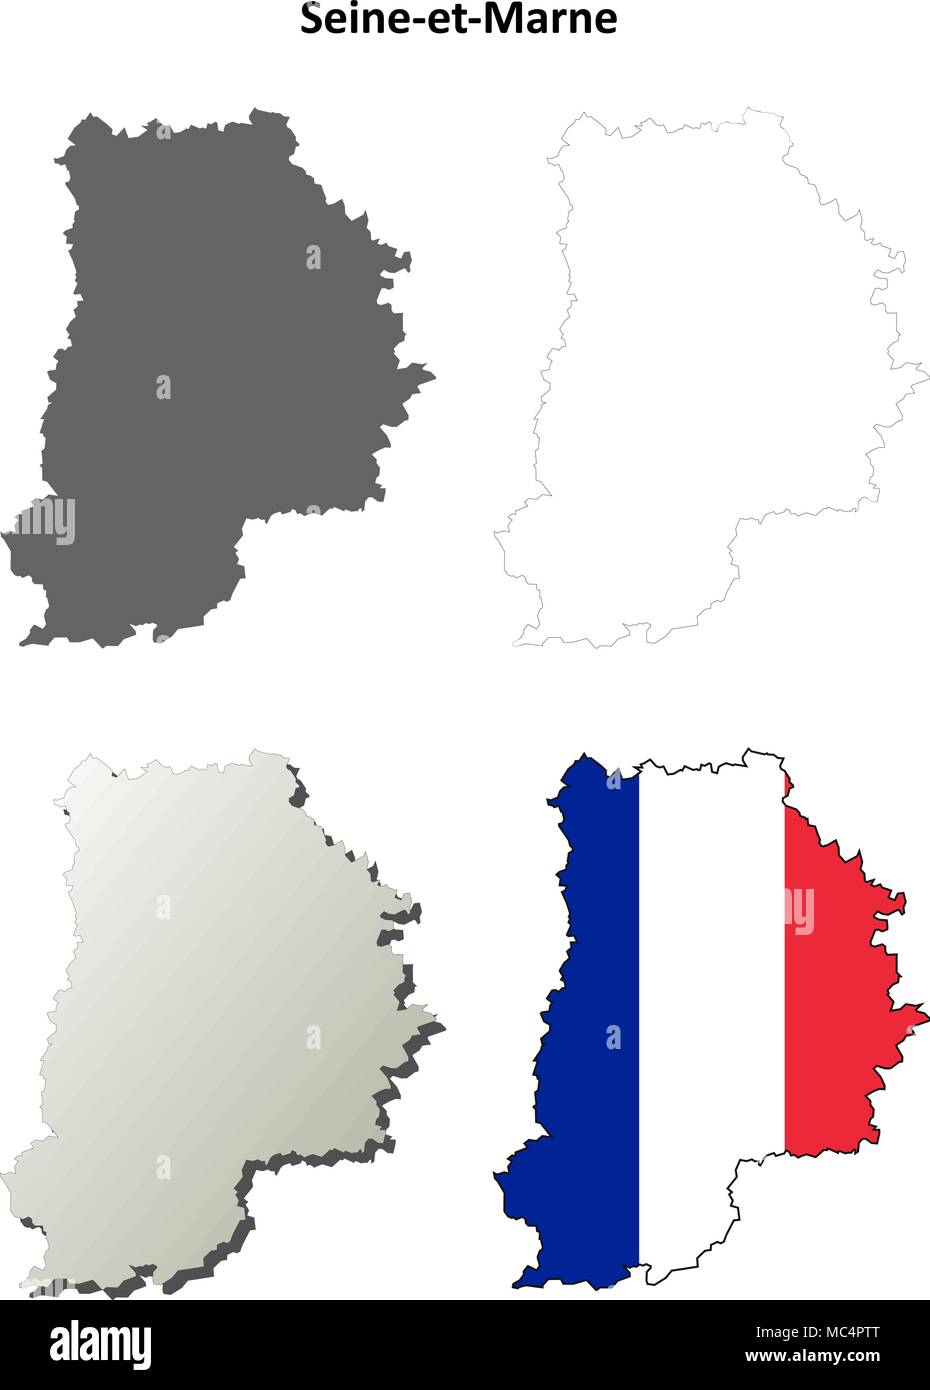 Seine-et-Marne, Ile-de-France Description de l'ensemble de cartes Illustration de Vecteur